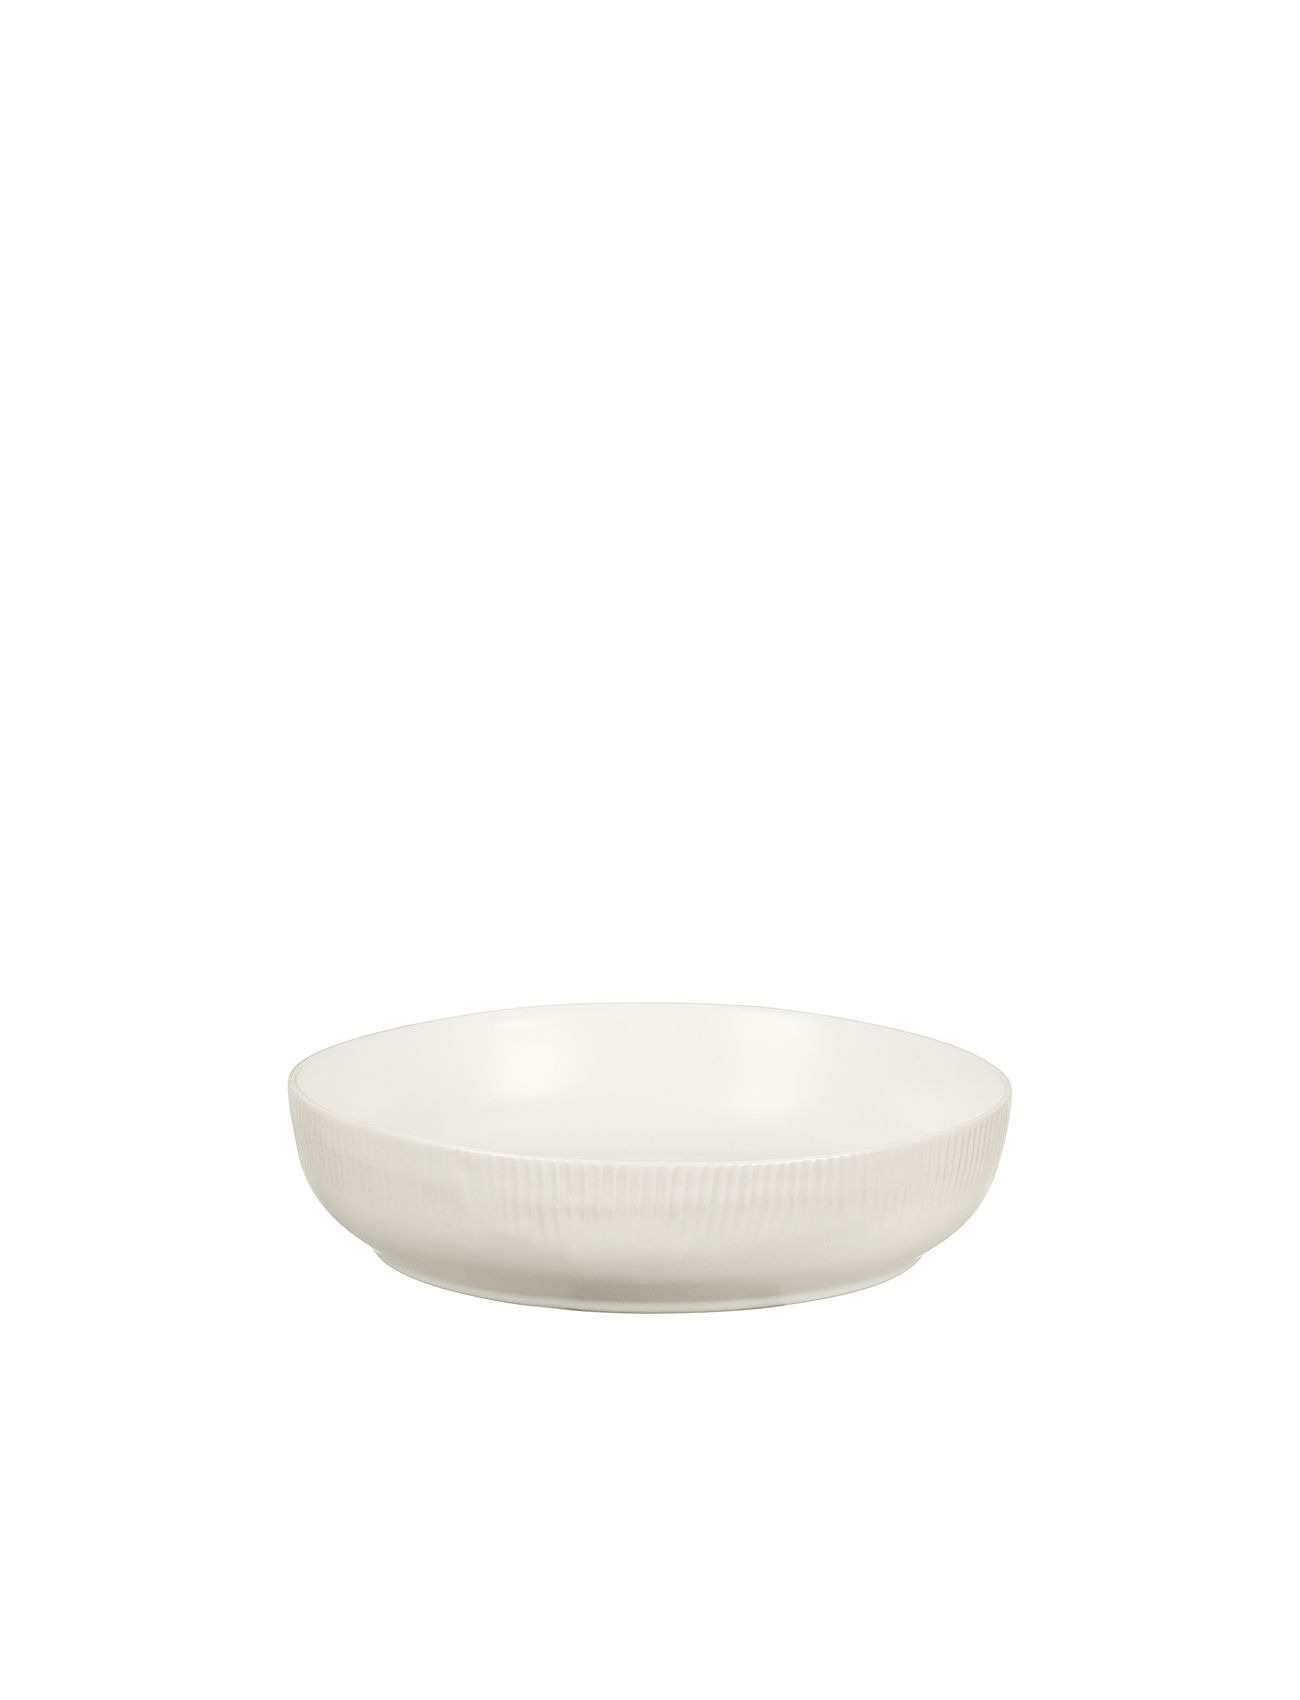 Sandvig Bowl Home Tableware Bowls & Serving Dishes Serving Bowls White Broste Copenhagen